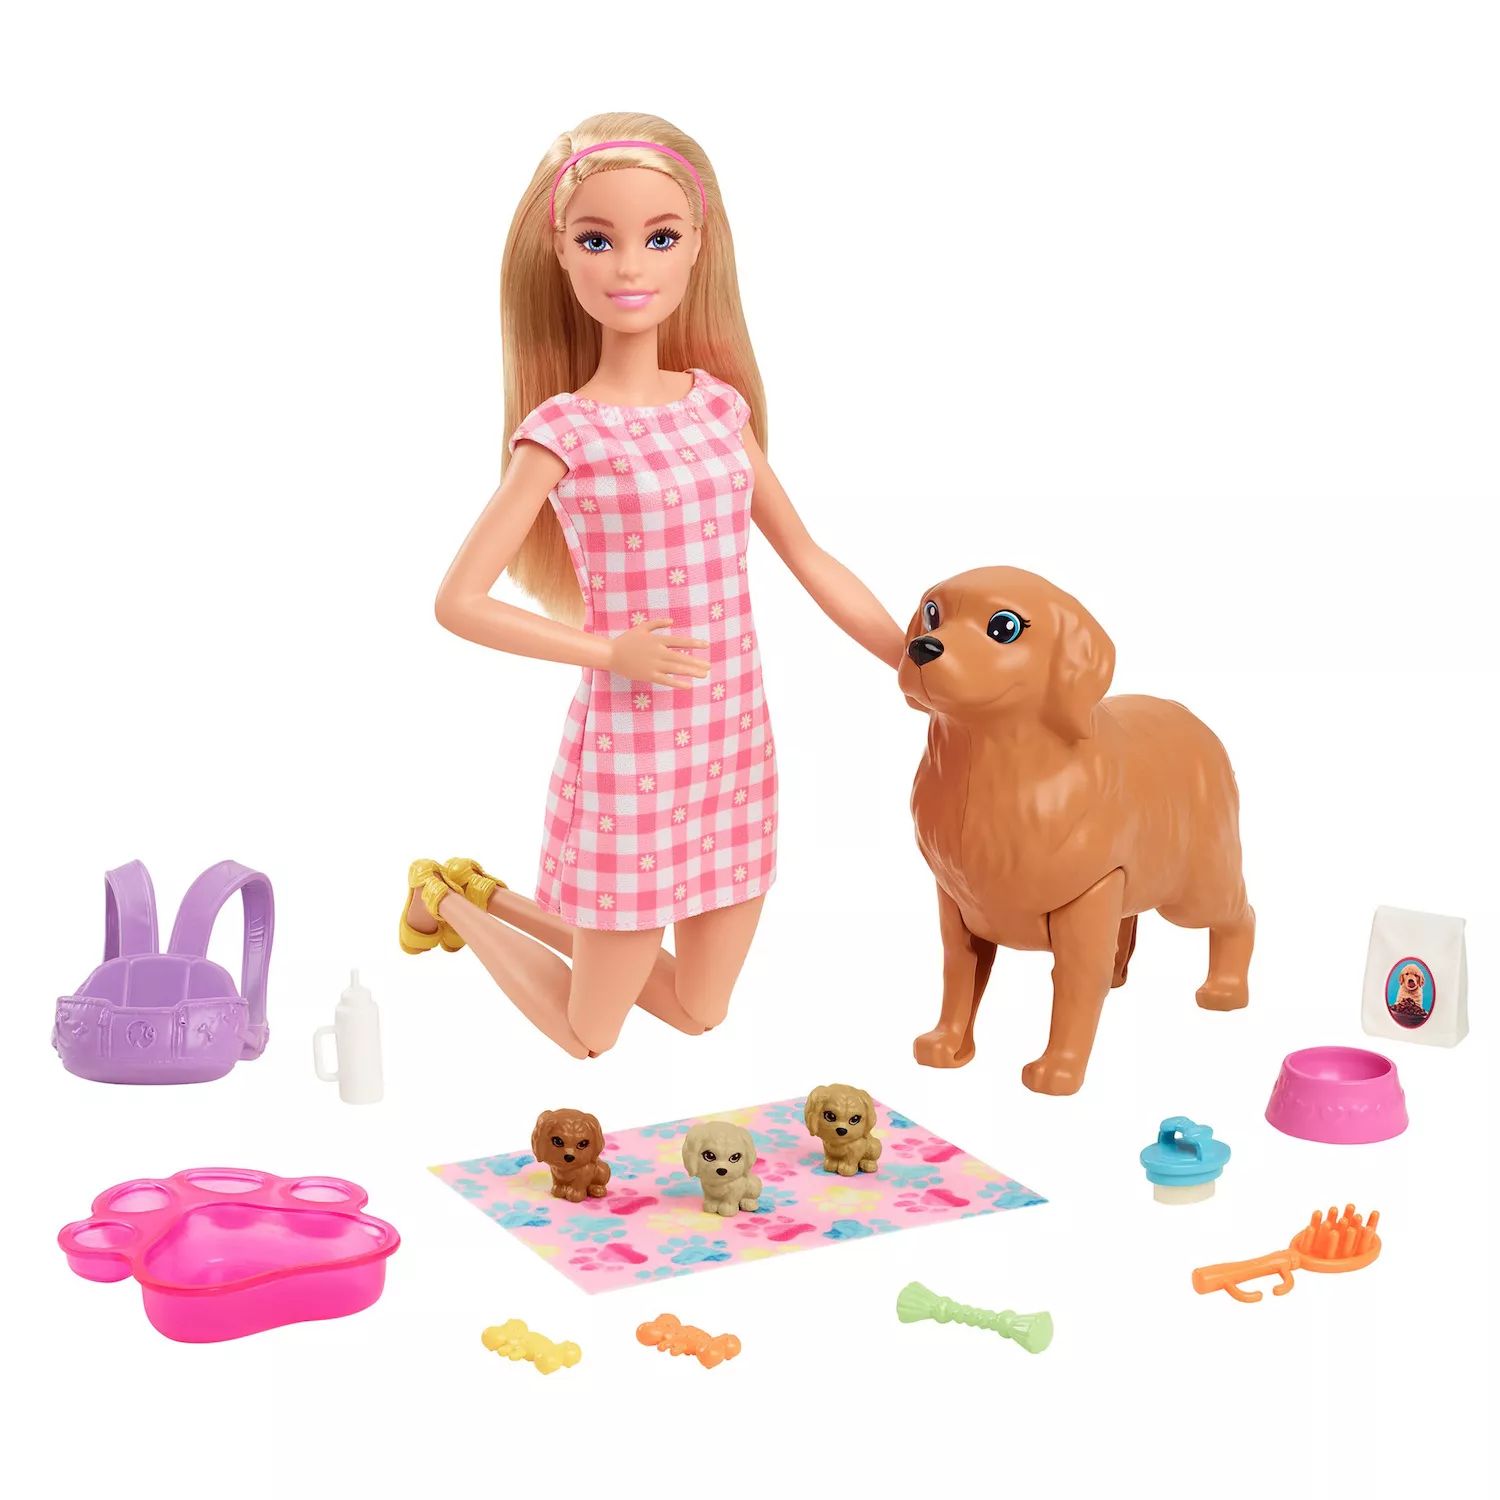 Игровой набор Barbie Doll Newborn Pups с куклой блондинкой, мамой-собакой и тремя щенками, детские игрушки Barbie набор с куклой barbie со щенками ghv92